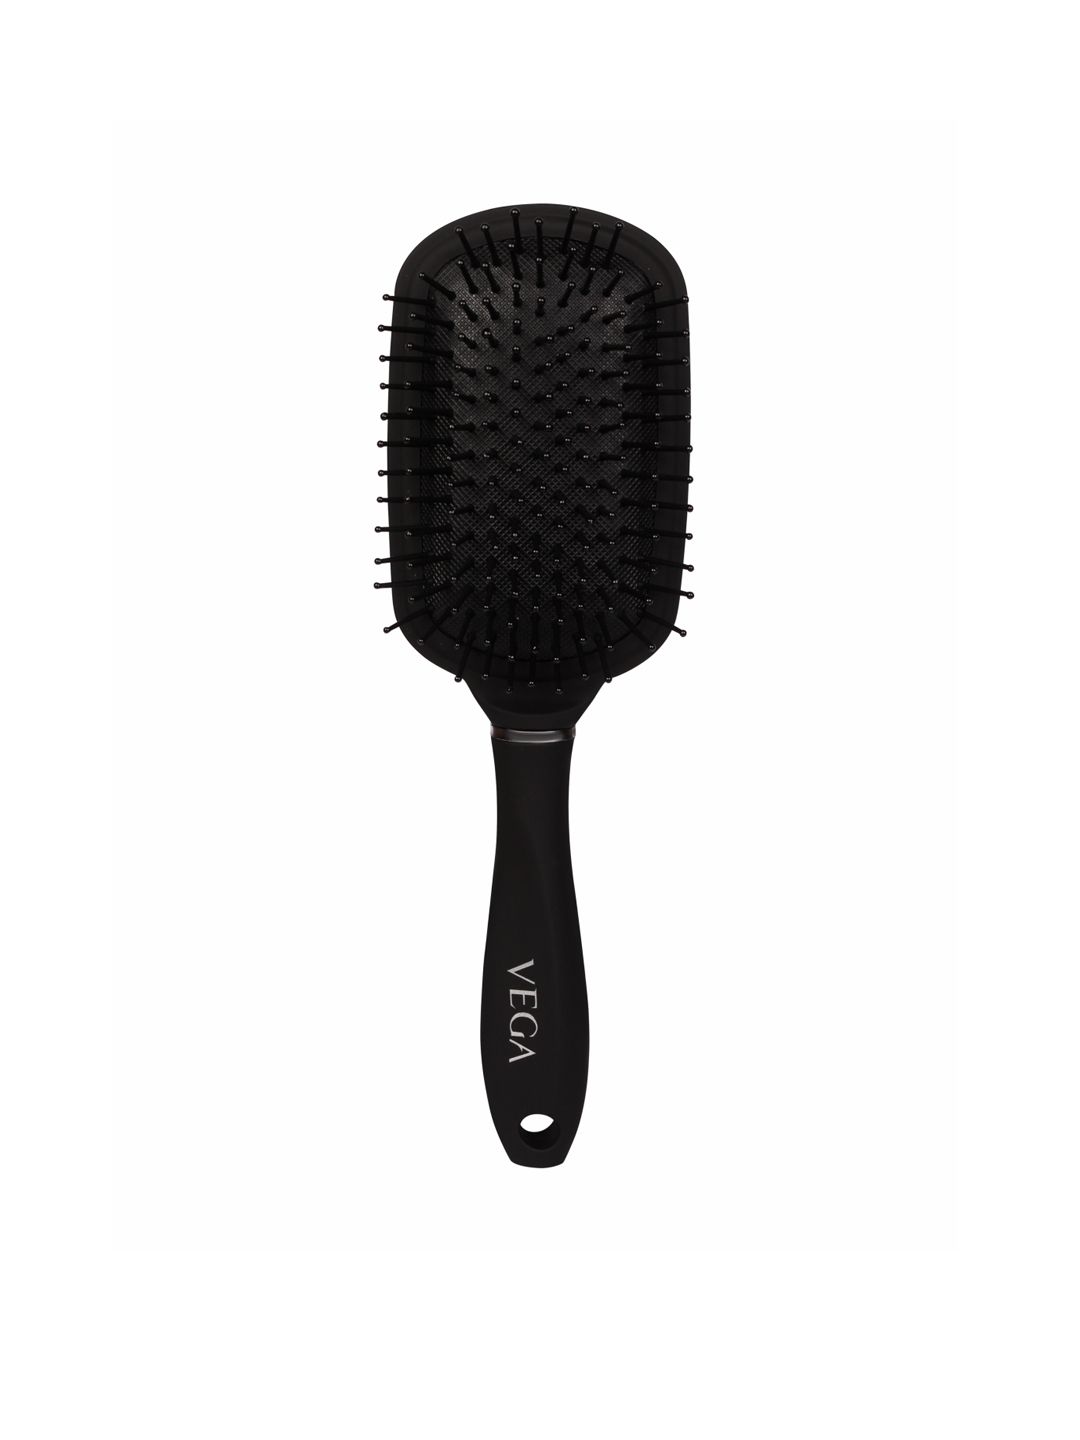 VEGA Unisex Black Premium Collection Paddle Hair Brush Price in India